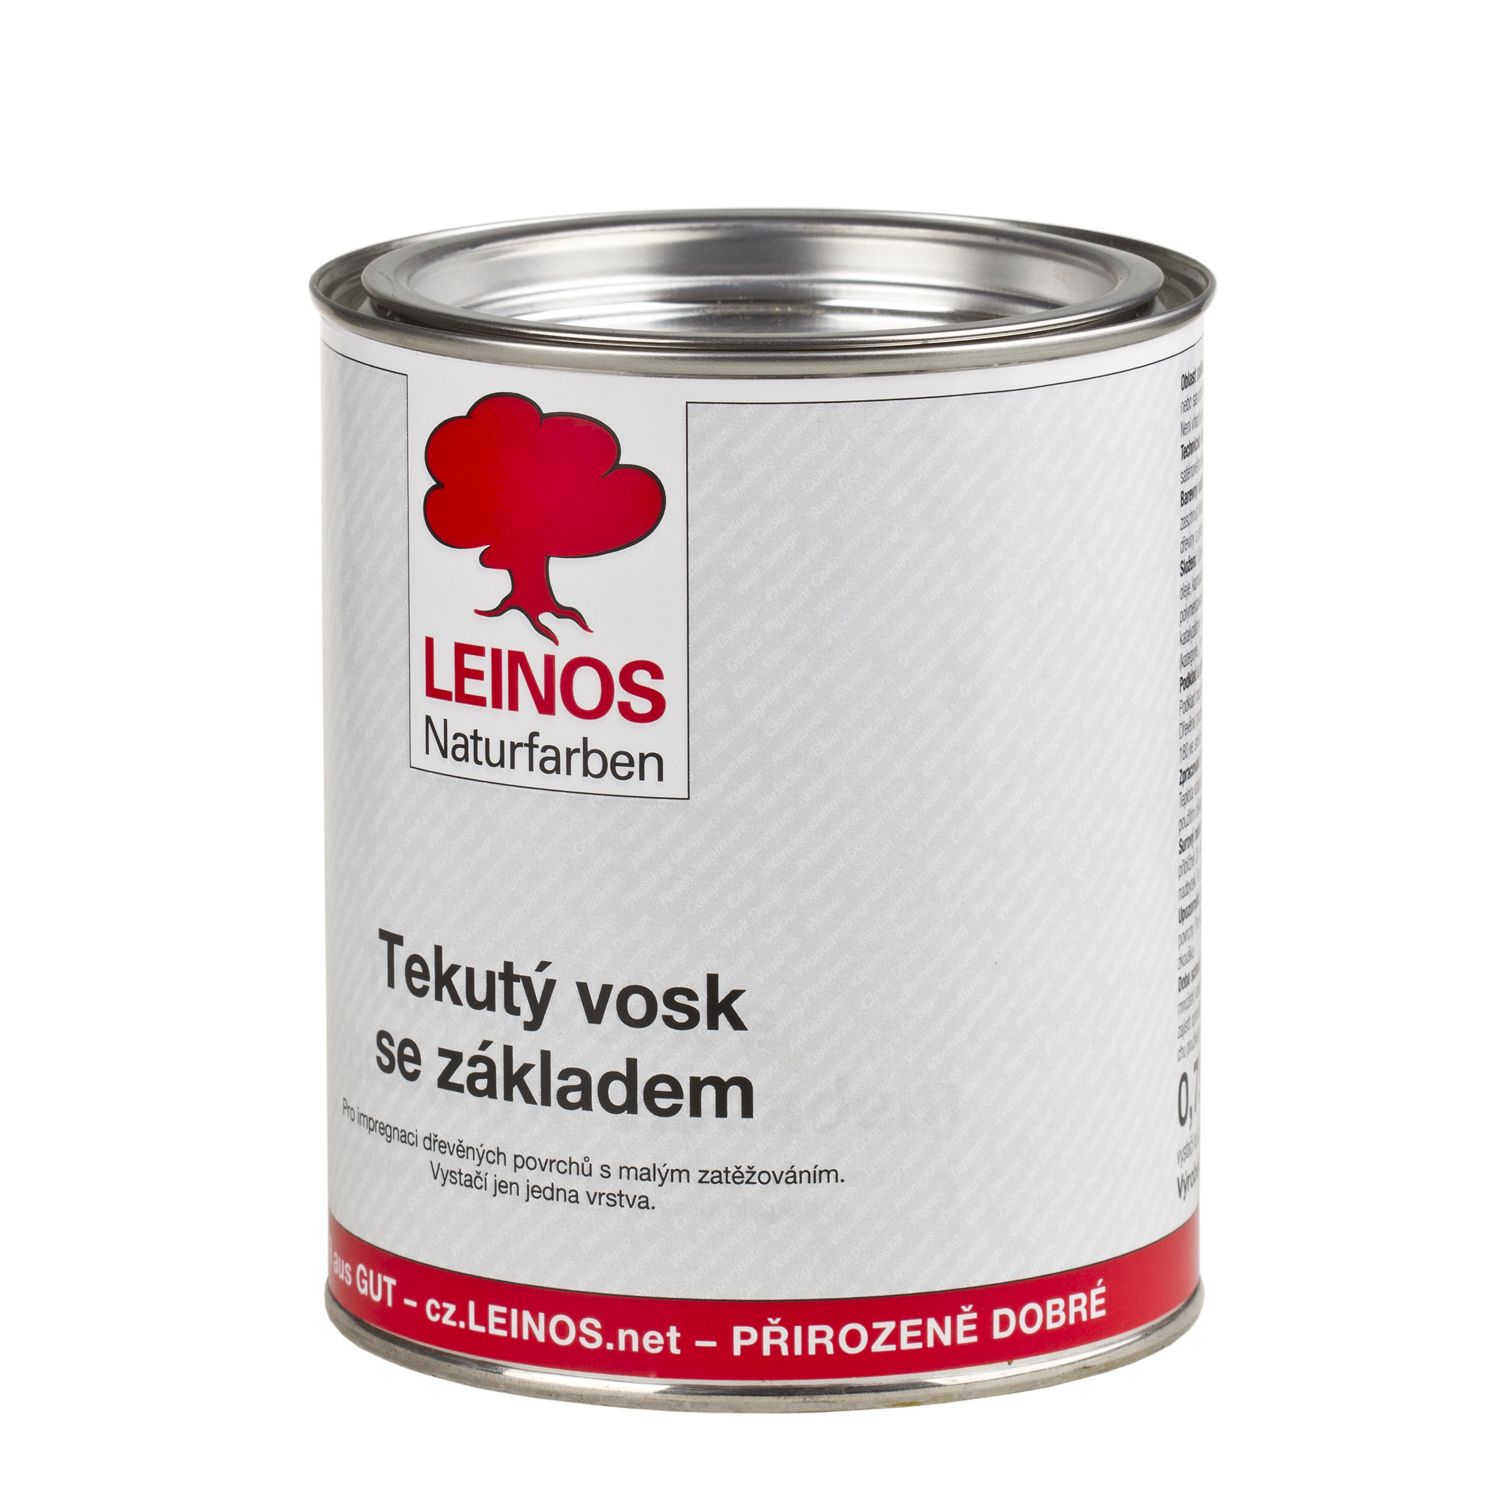 LEINOS 342 Tekutý vosk se základem (750ml) - tekutý vosk na dřevo - olejo-vosková impregnace dřeva, dřevěných trámů a obkladů v interiéru.